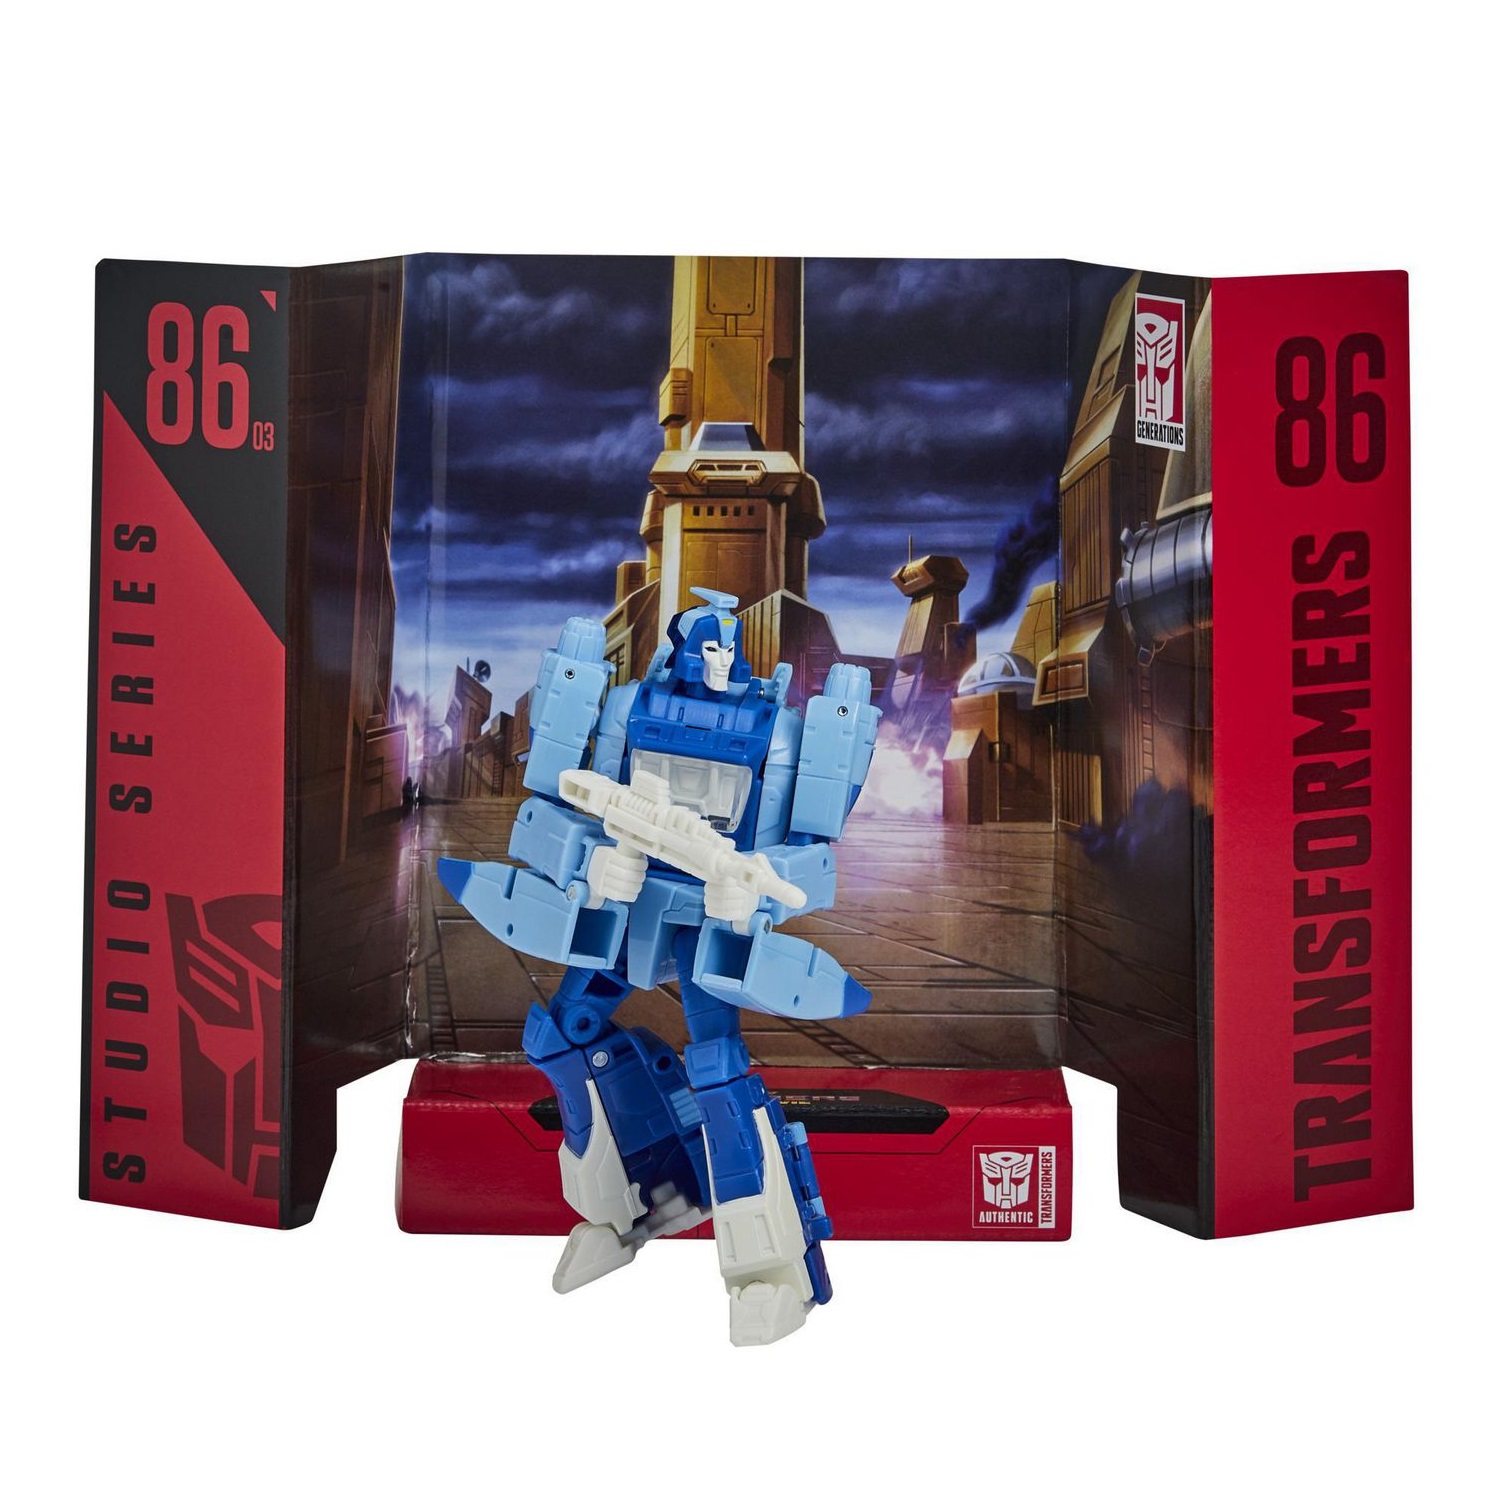 Transformers Studio Series The Movie Deluxe Hasbro E0701 F0711 Figurka Blurr 86-03